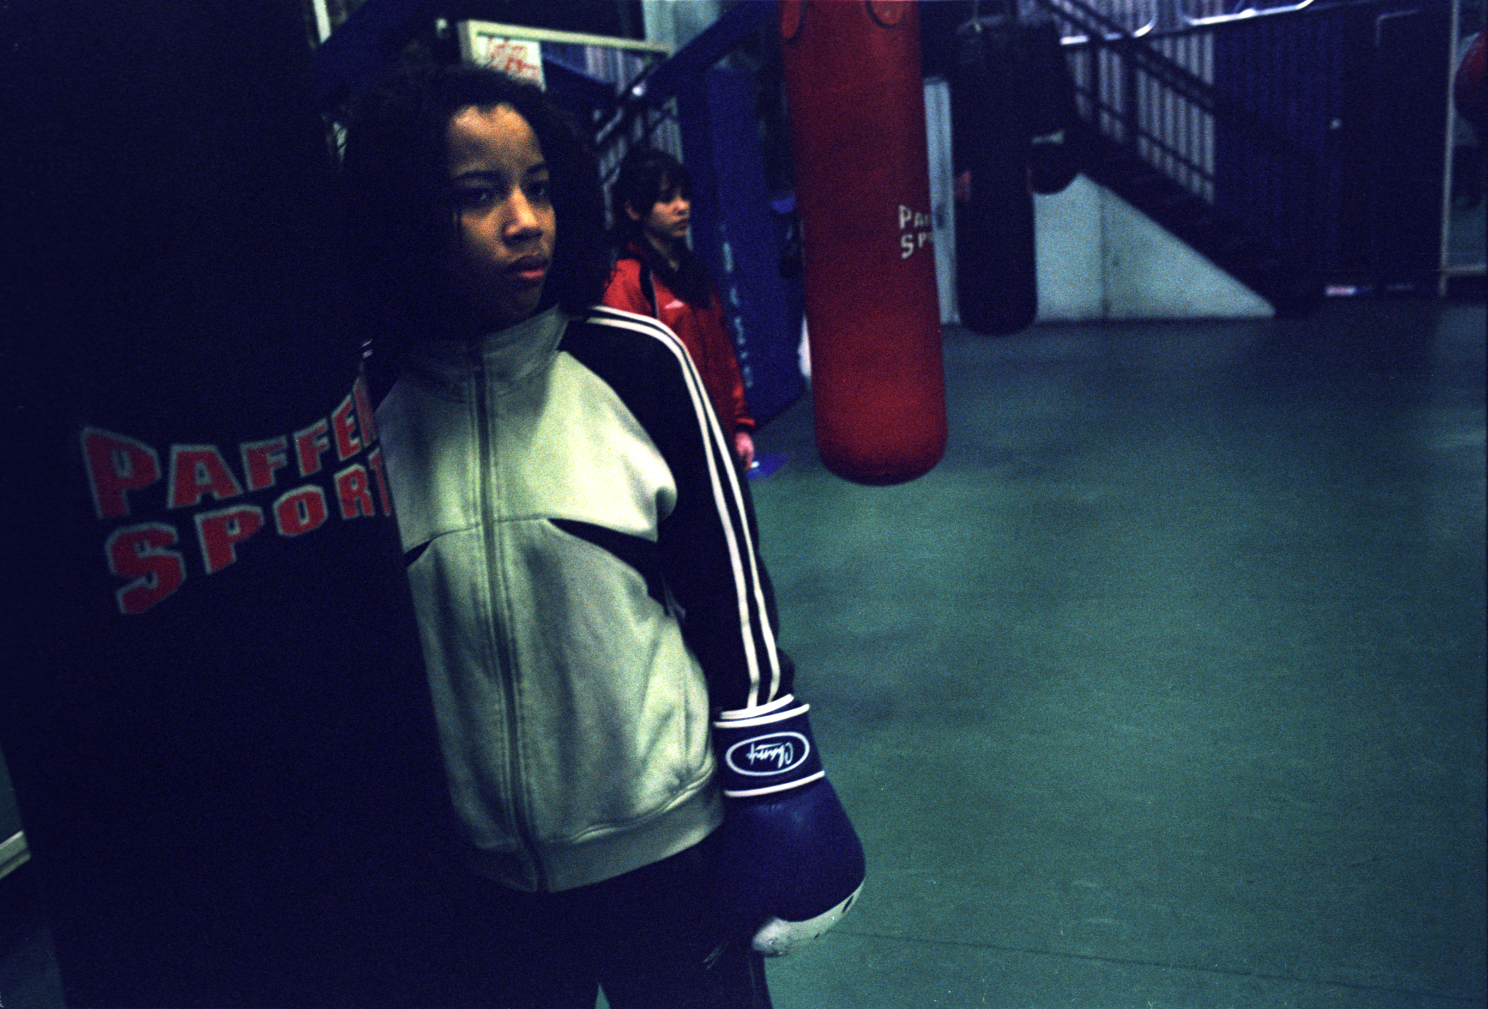 La boxe : un moyen d'évasion pour filles et garçons